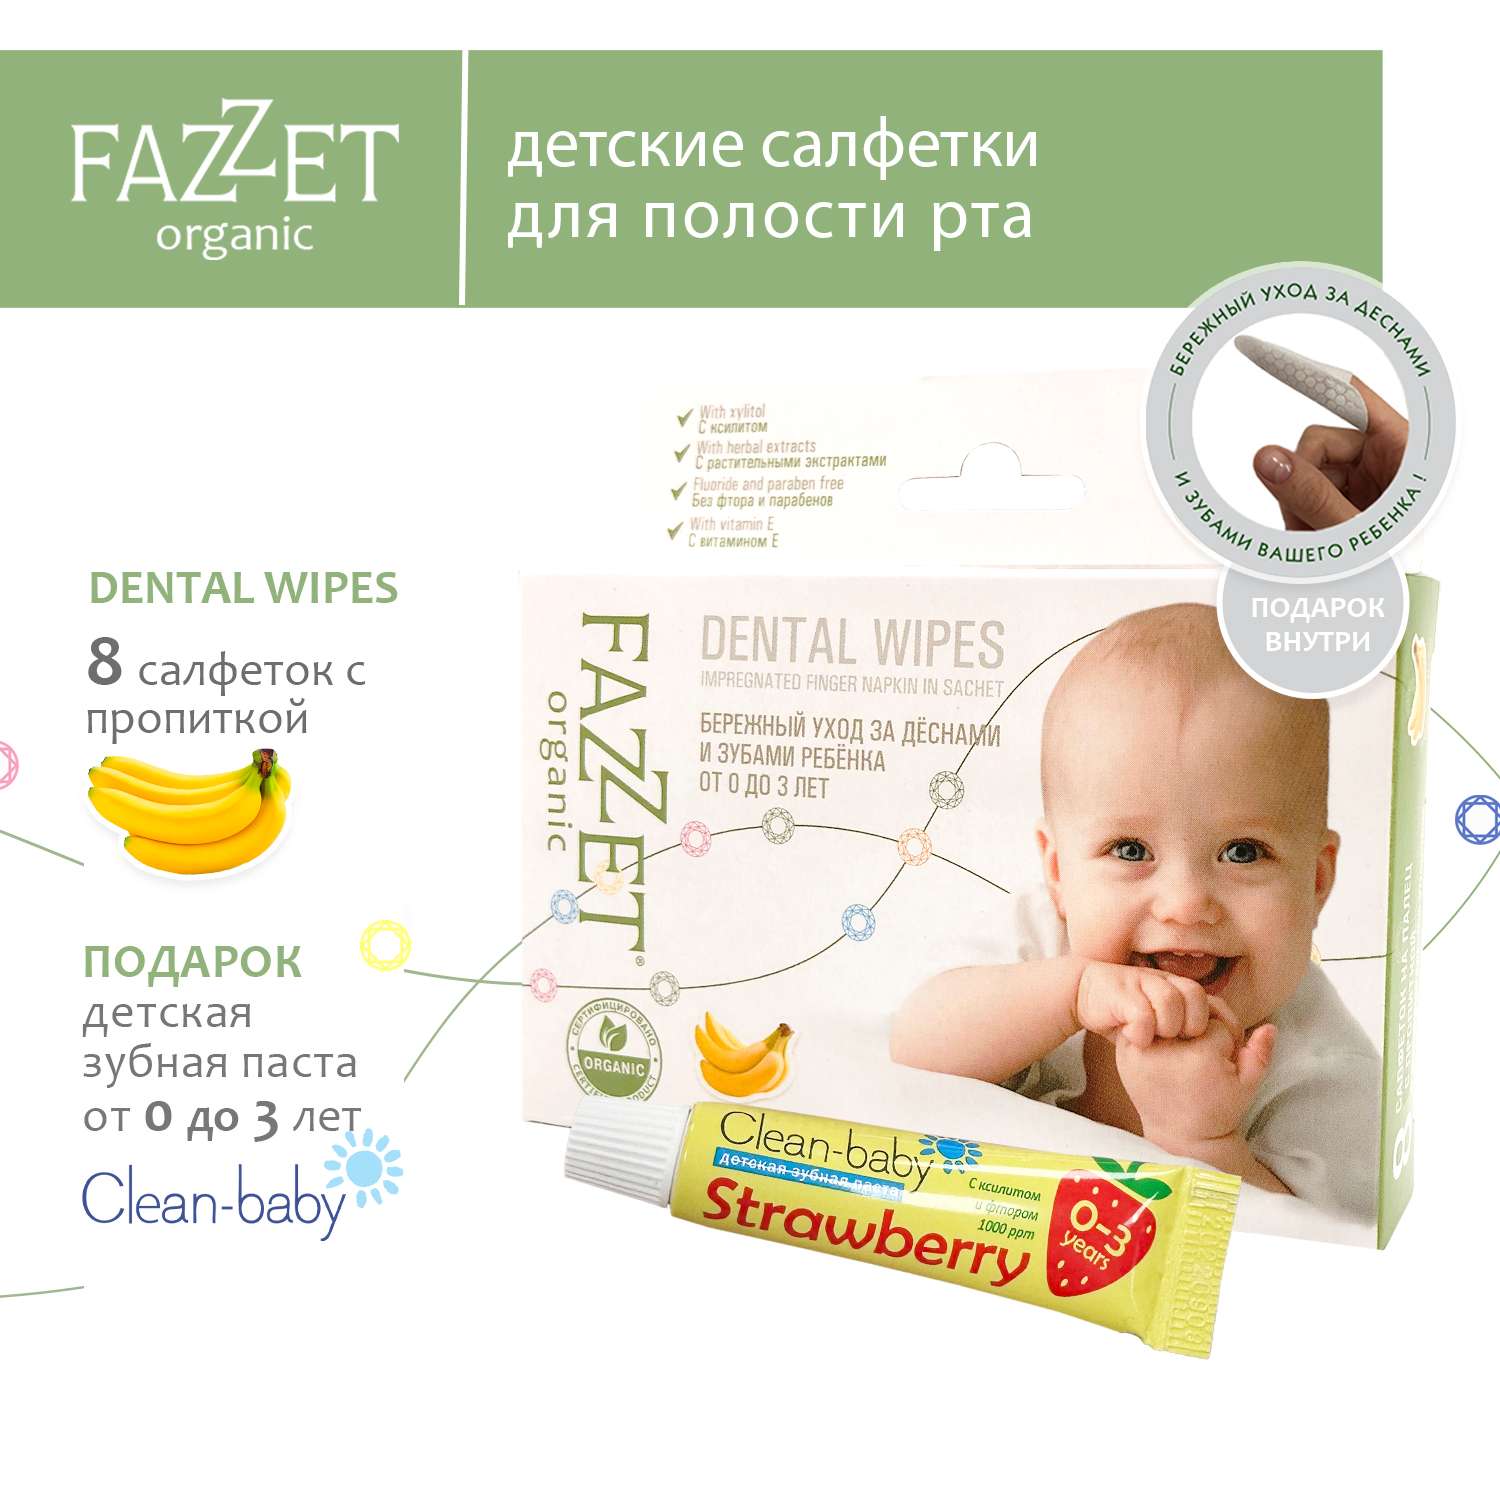 Детские салфетки Fazzet ORGANIC для полости рта 0-3 года 8 шт и подарок зубная паста Clean-baby 0-3 года 5 мл - фото 2